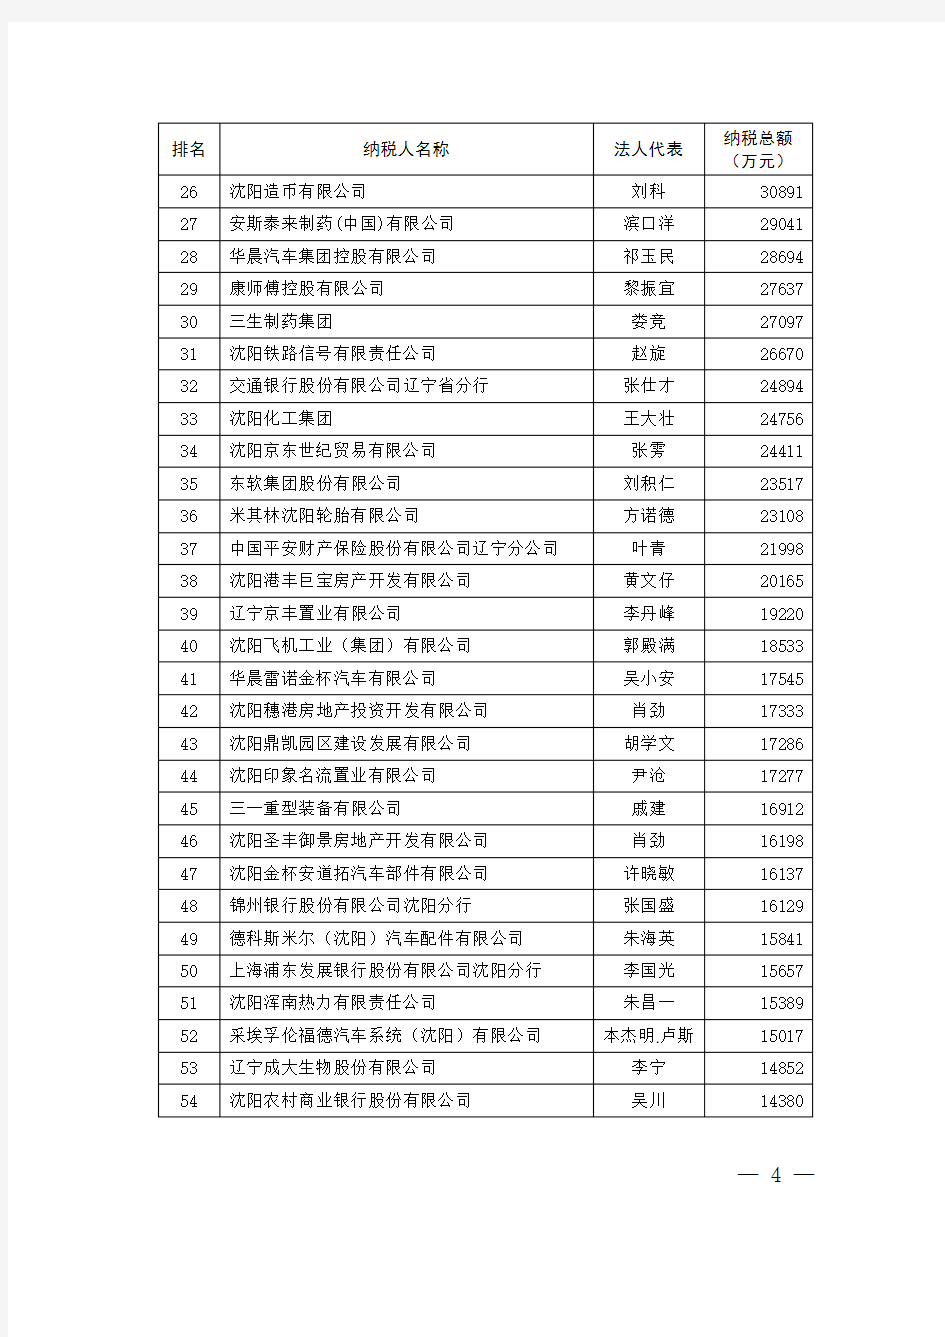 沈阳市2018年度纳税百强单位名单